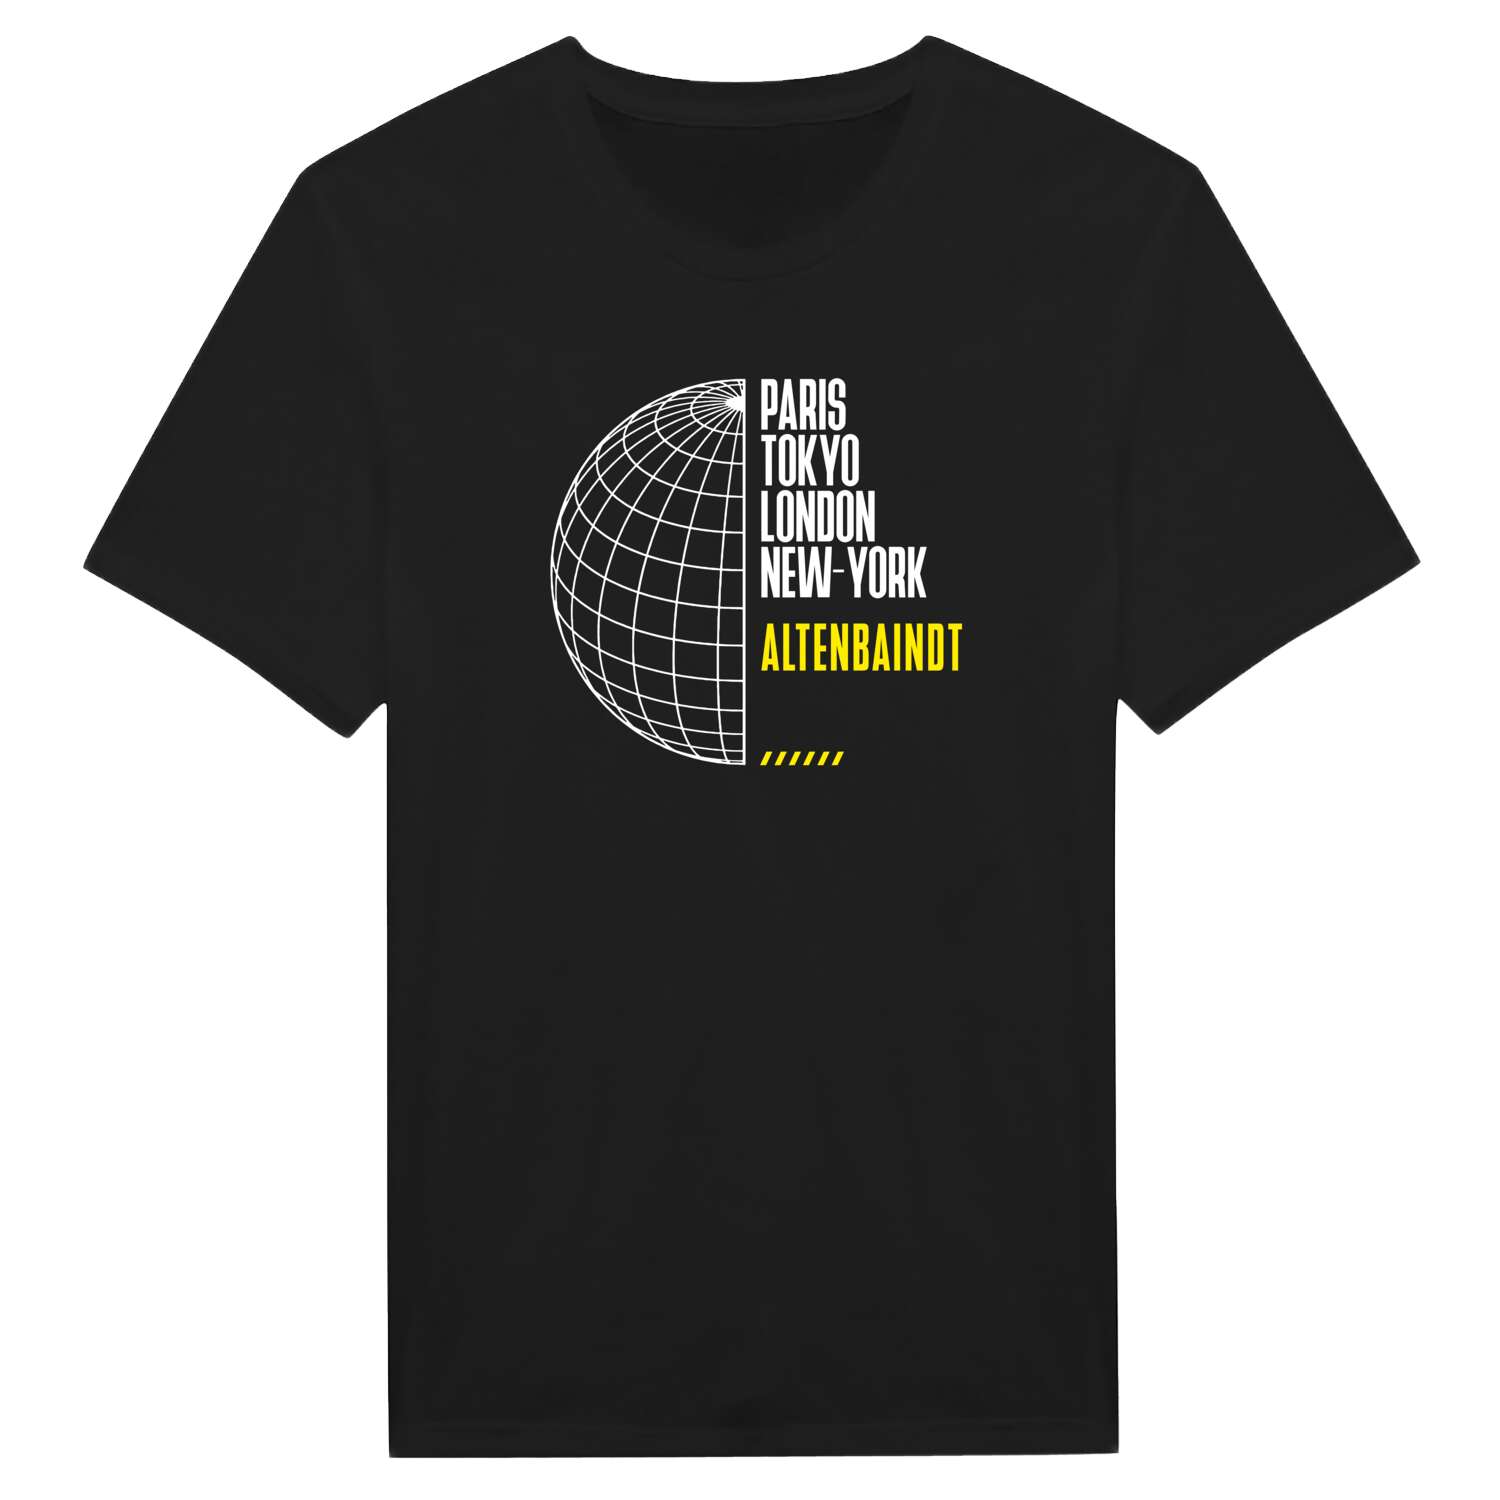 Altenbaindt T-Shirt »Paris Tokyo London«